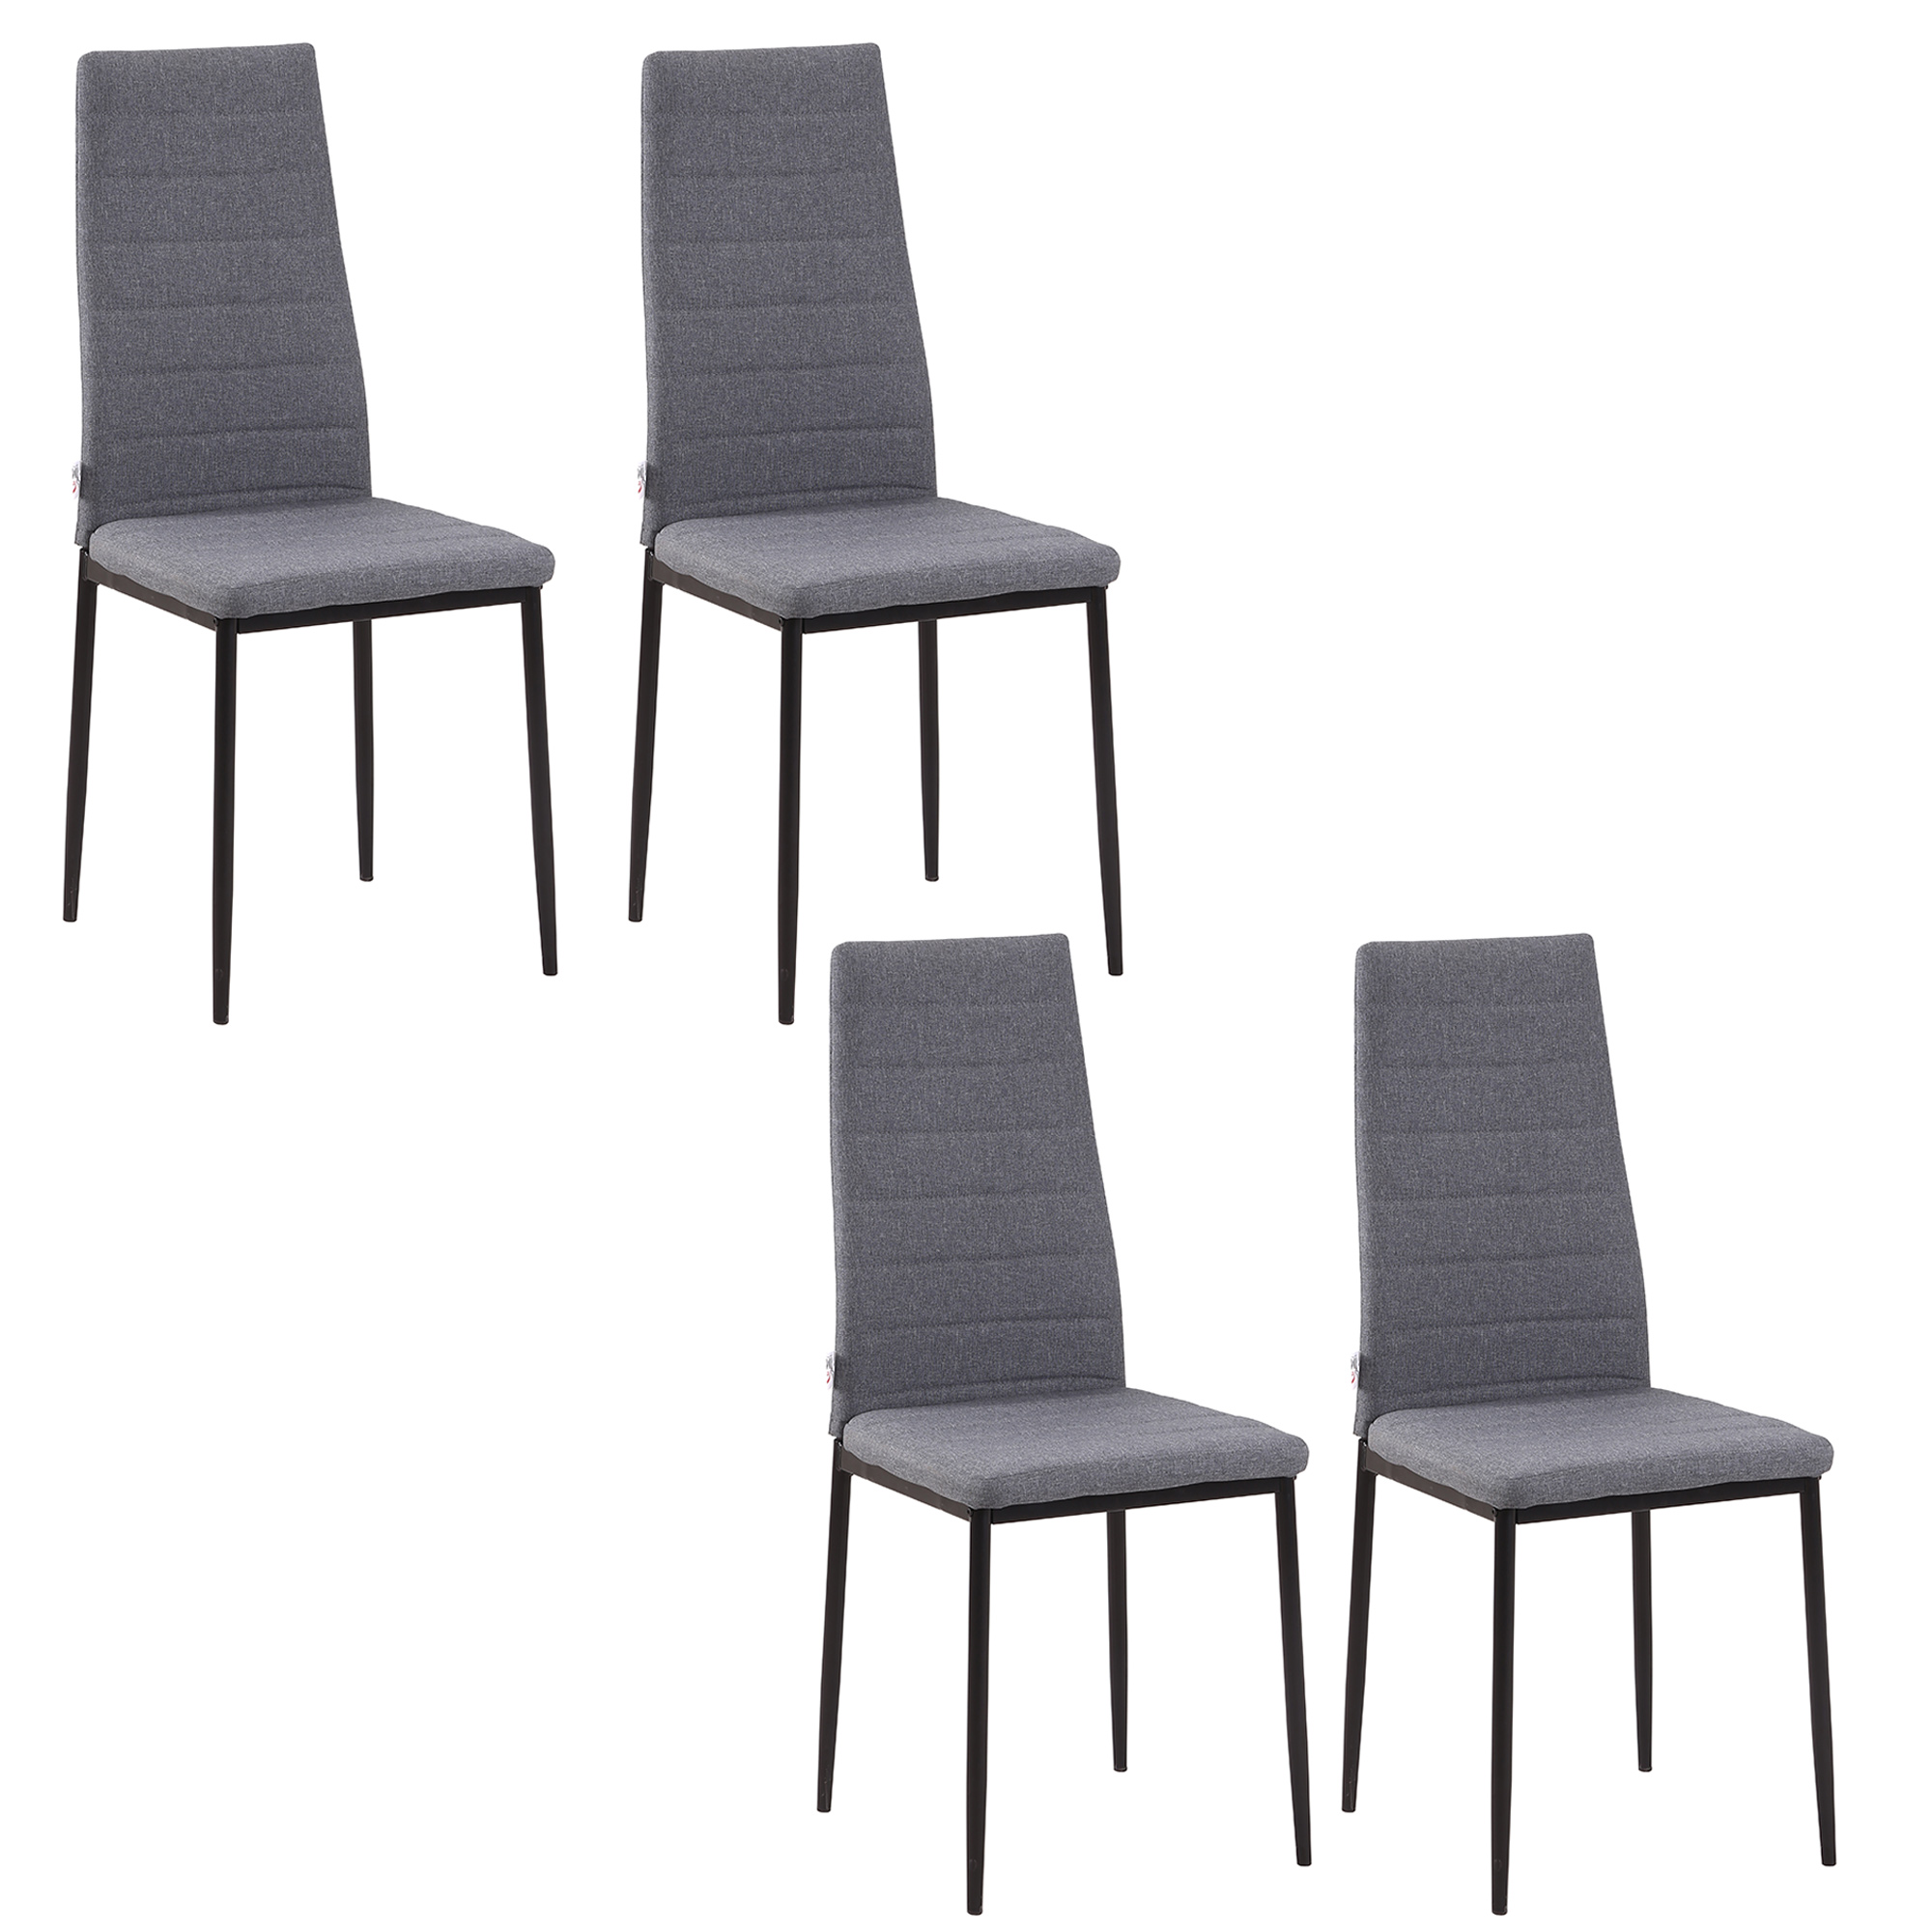 Σετ Μεταλλικές Καρέκλες με Υφασμάτινη Επένδυση 41 x 50 x 97 cm 4 τμχ Χρώματος Γκρι HOMCOM 835-483V01GY